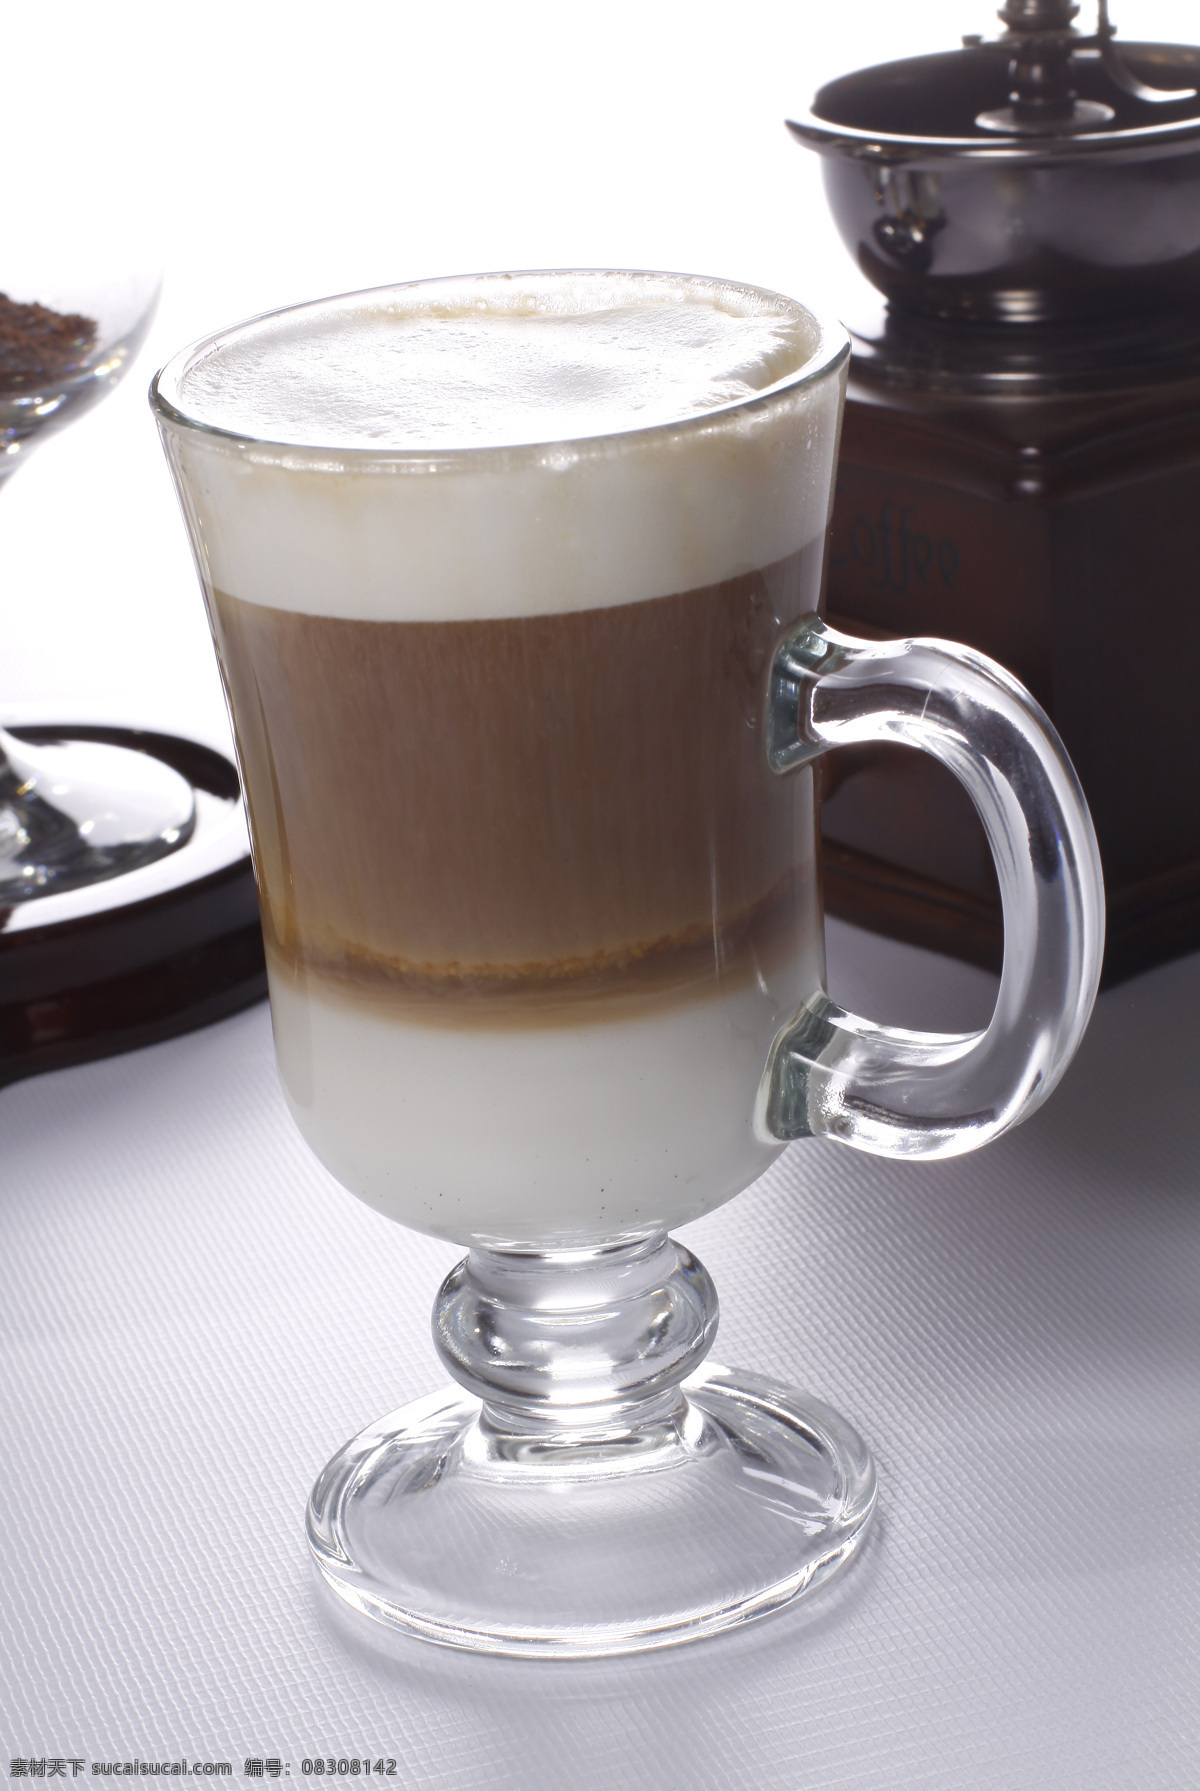 拿铁咖啡 咖啡 咖啡大图 摩卡咖啡 拿铁 现磨咖啡 热咖啡 玛奇朵 冰咖啡 卡布奇诺 拉花咖啡 饮品系 餐饮美食 饮料酒水